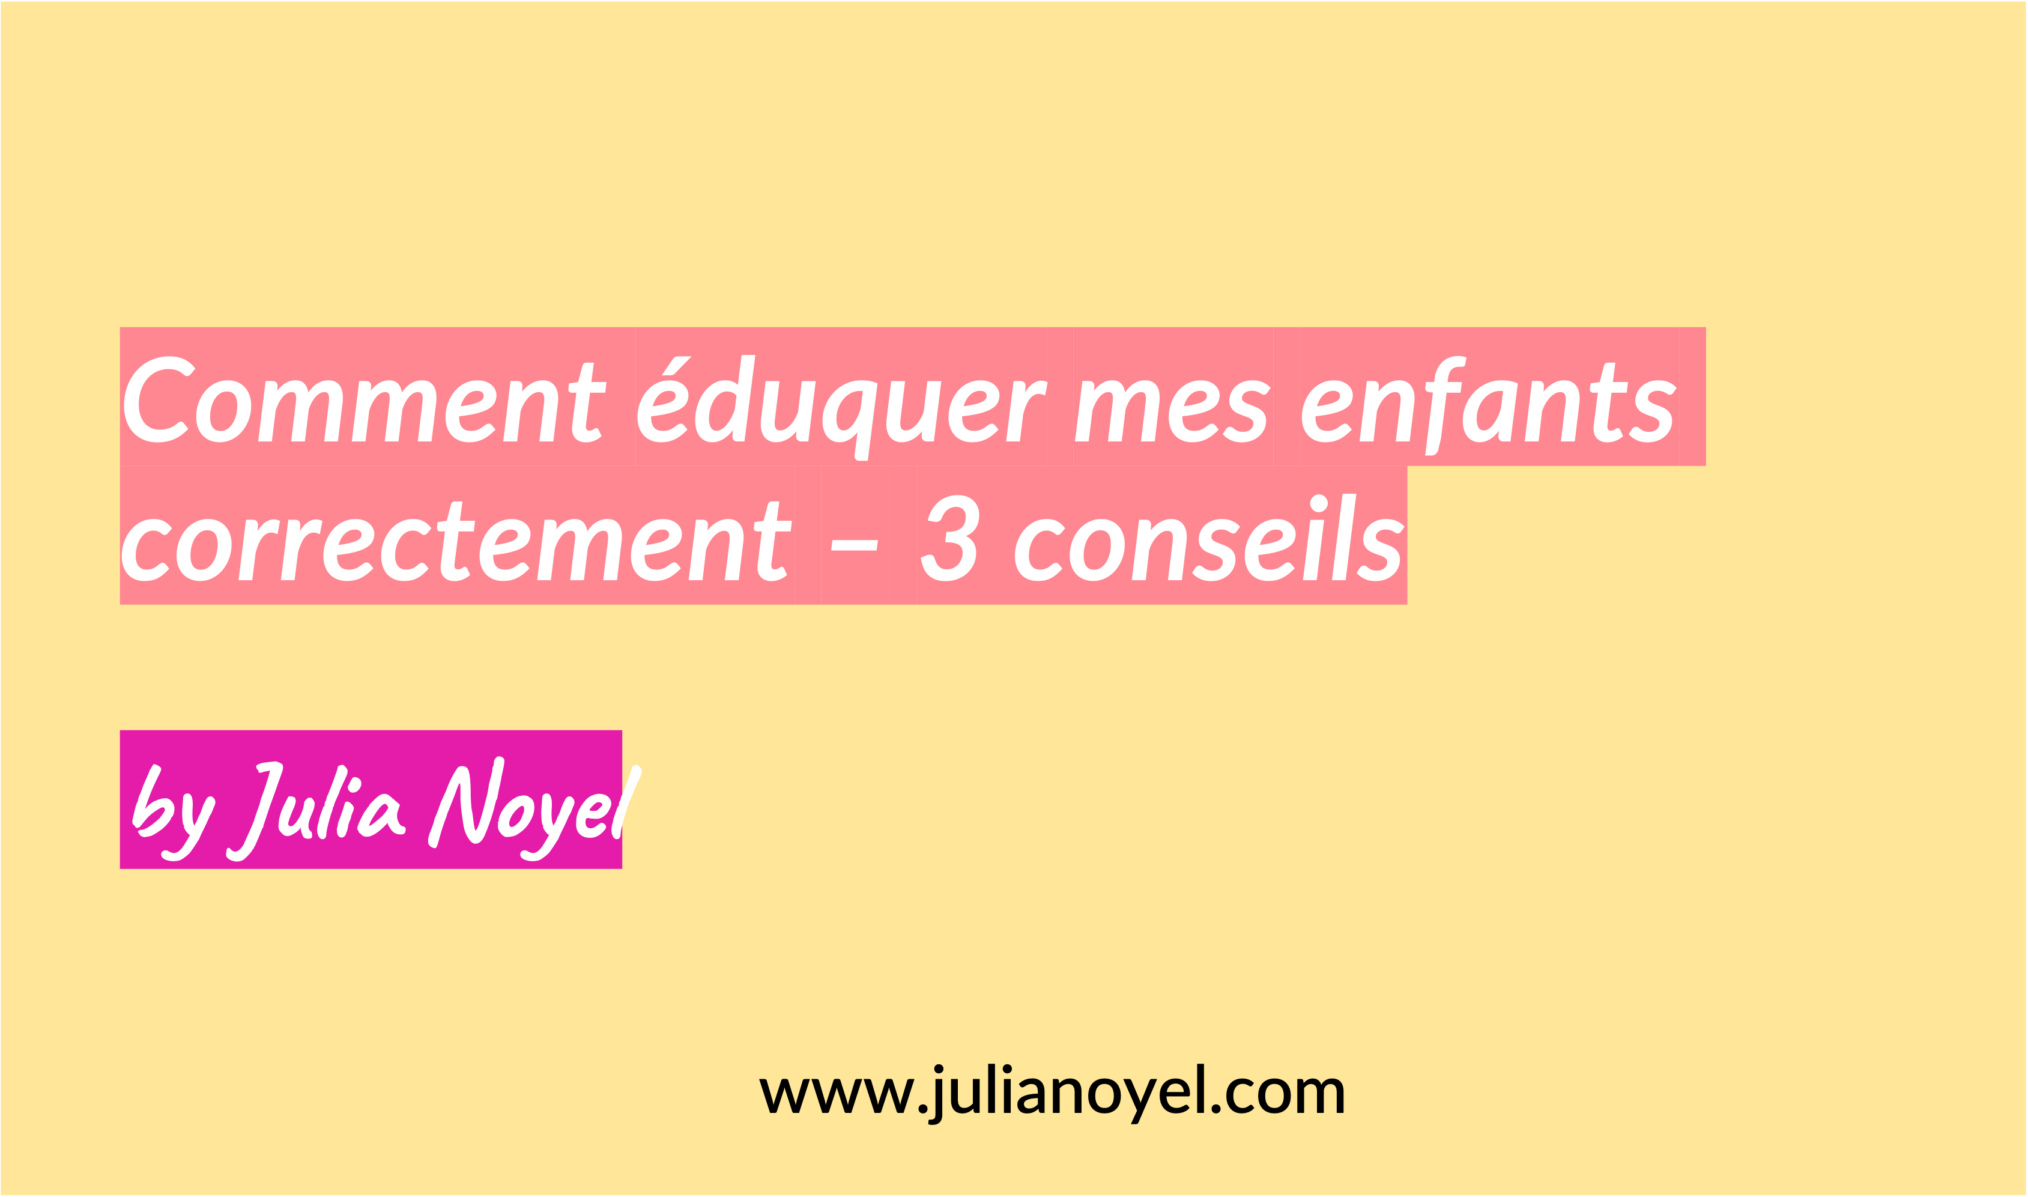 Comment éduquer mes enfants correctement – 3 conseils by Julia Noyel